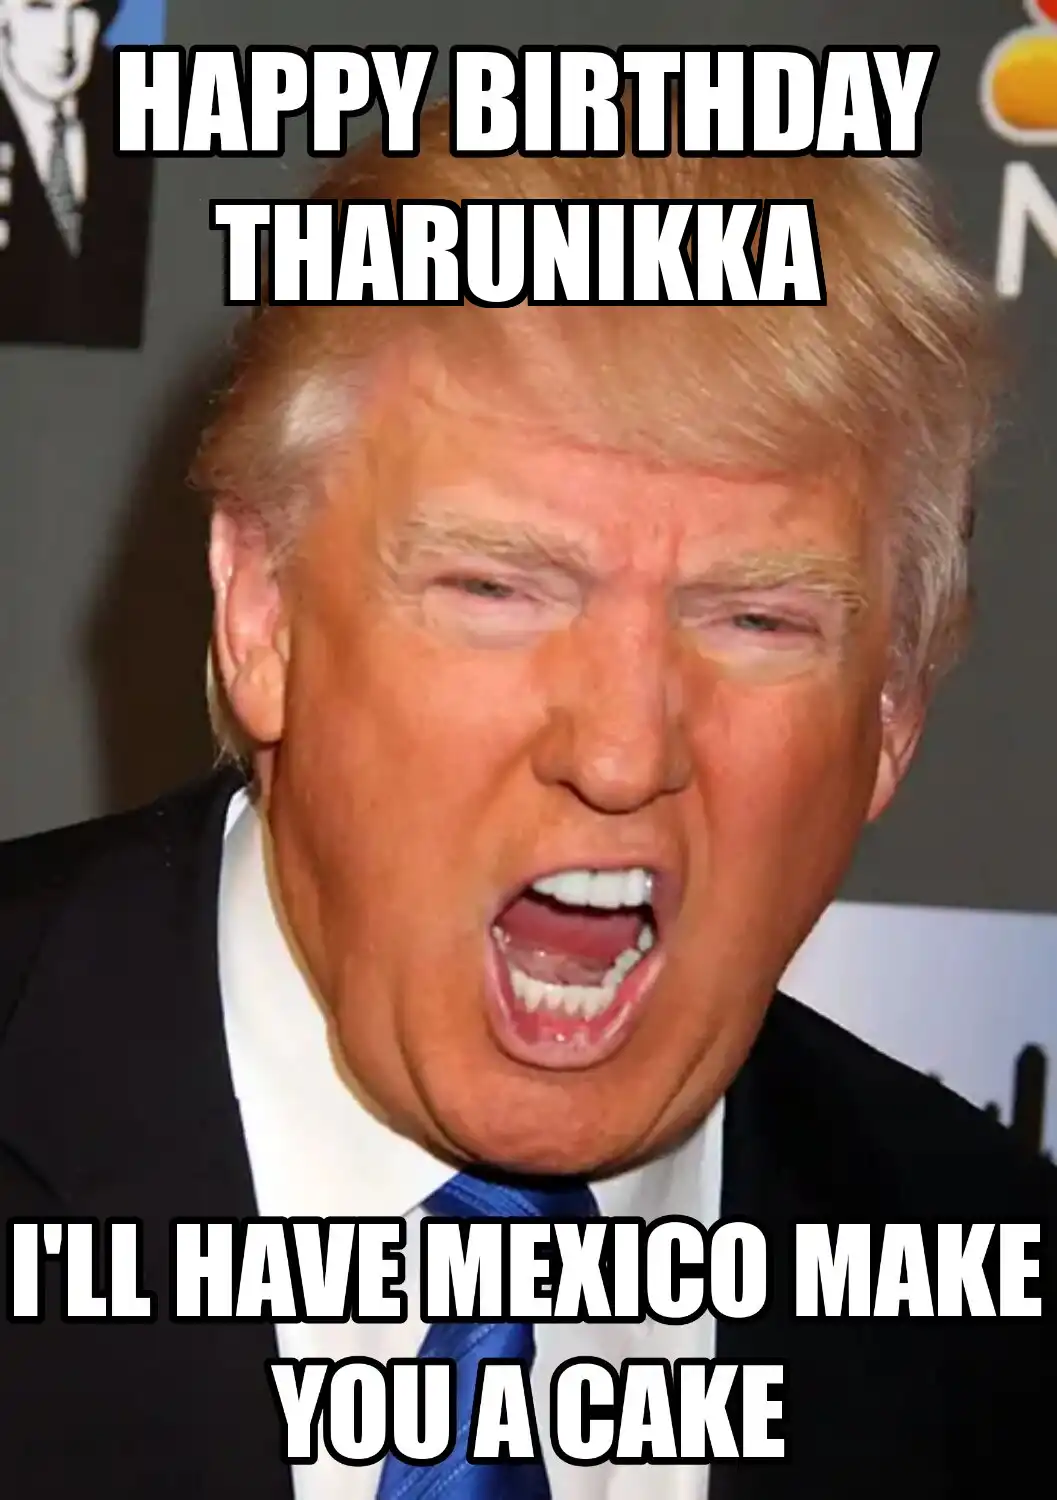 Happy Birthday Tharunikka Mexico Make You A Cake Meme